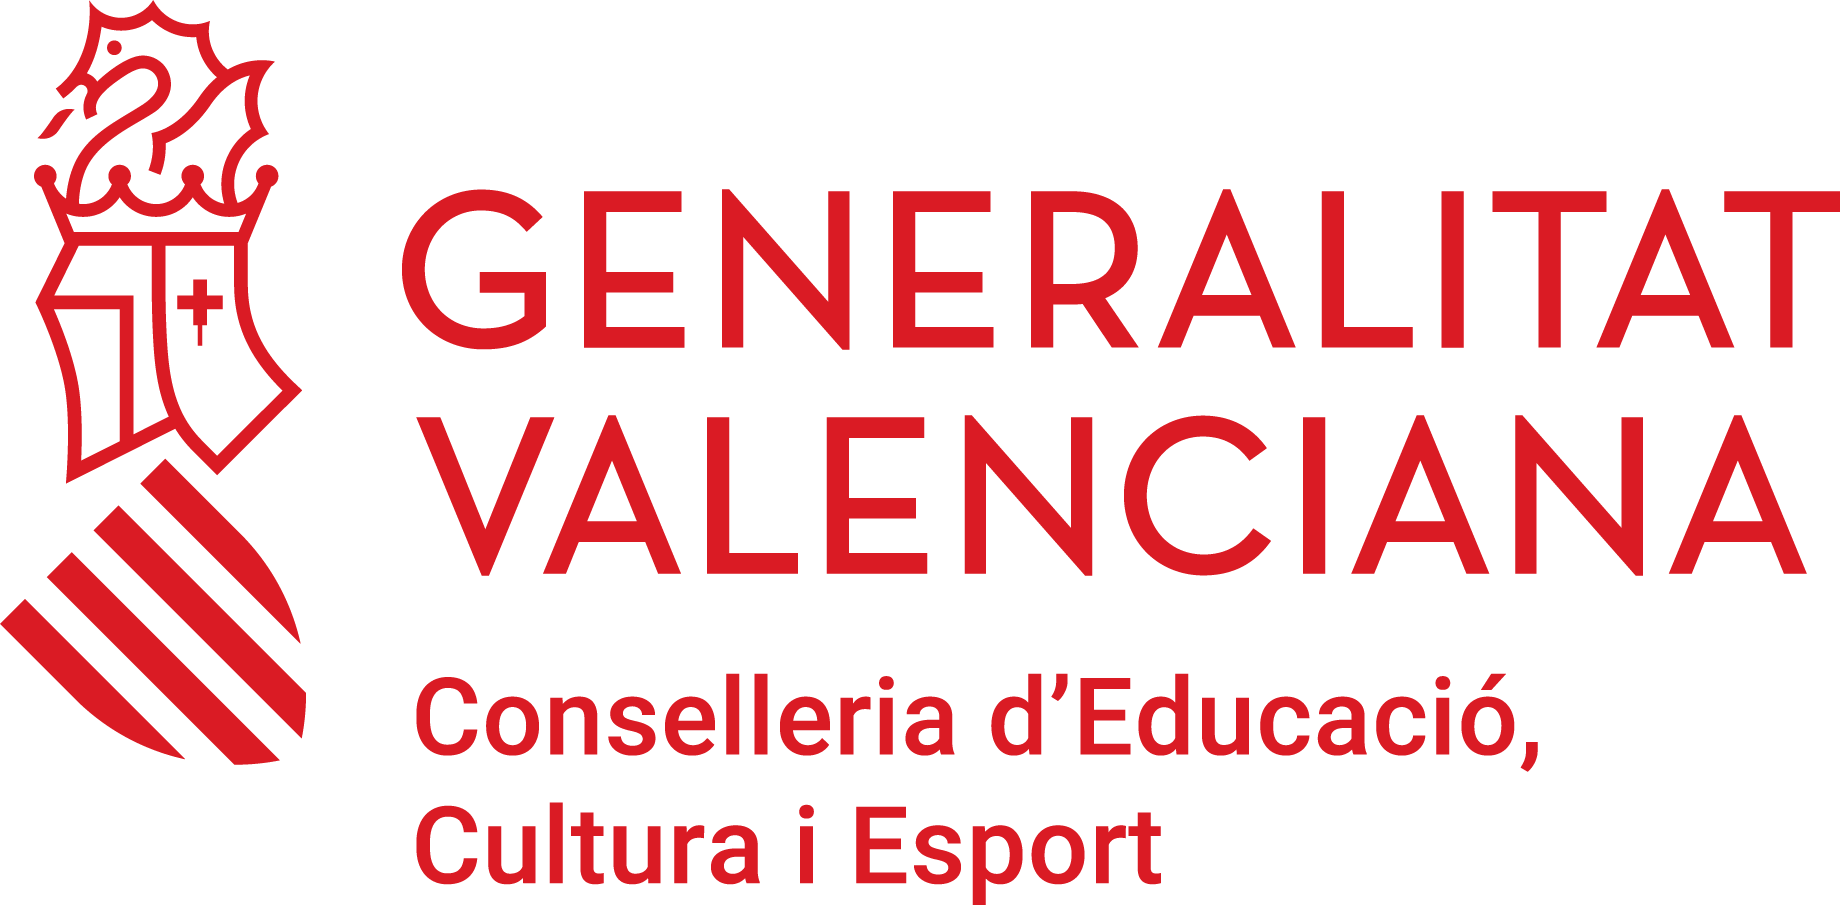 gv_conselleria_educacio_cmyk_val